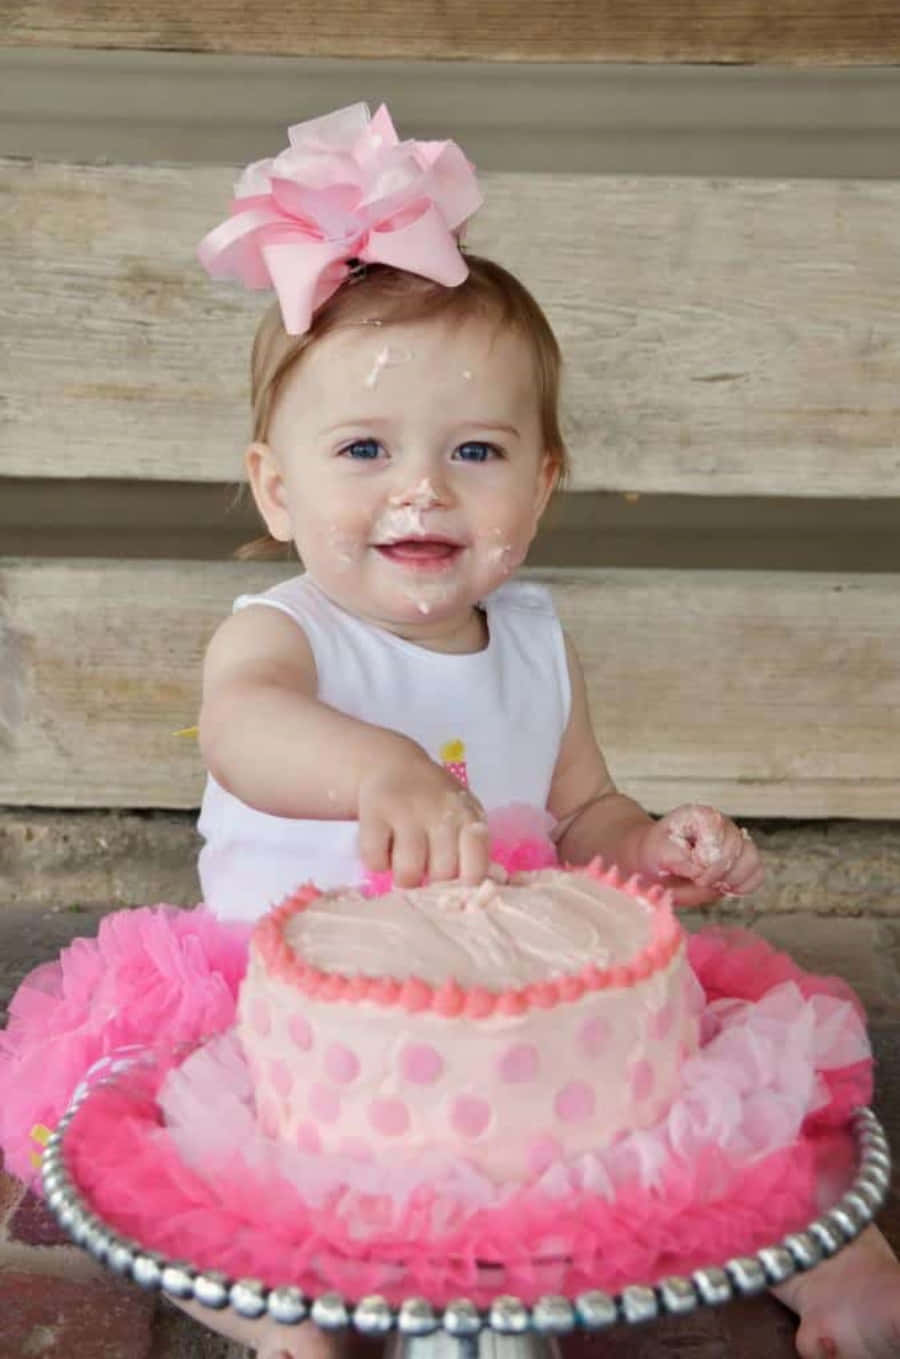 Unaniña Bebé En Un Tutú Rosa Está Comiendo Un Pastel.